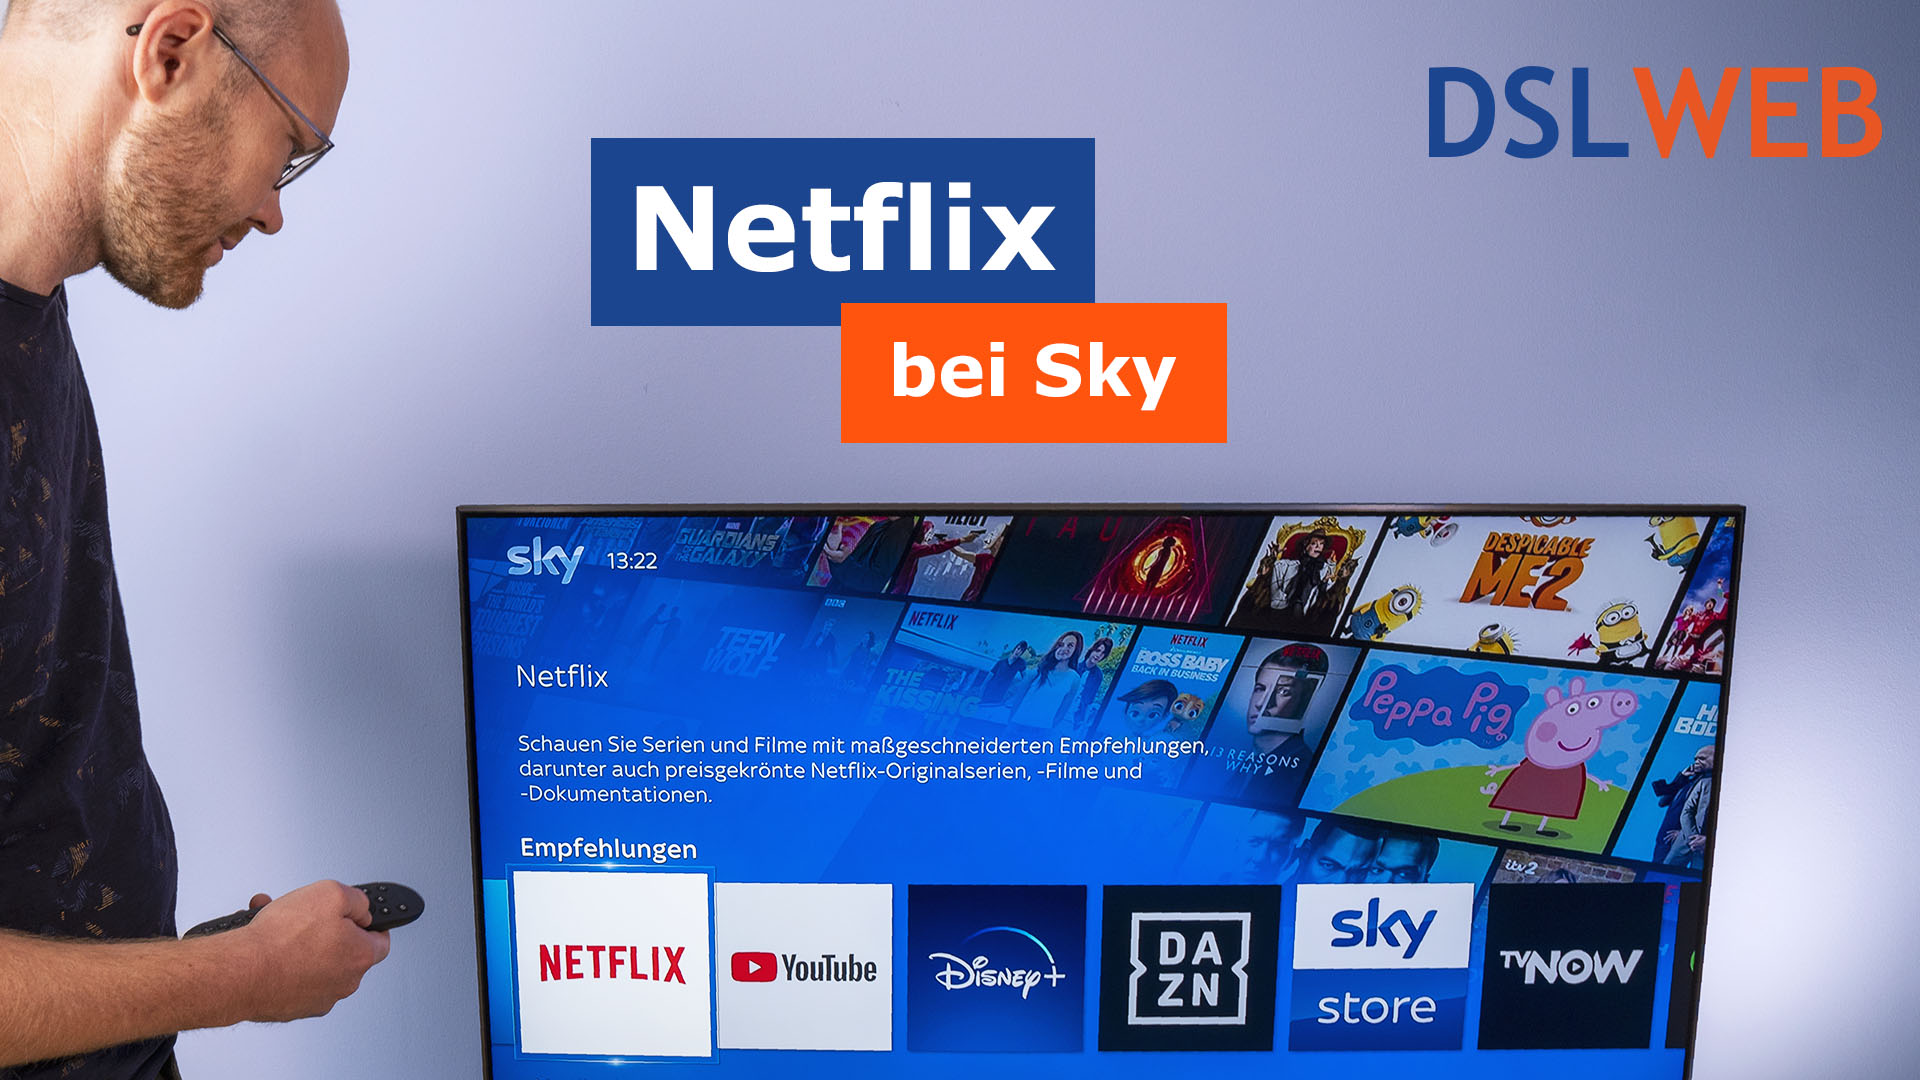 Netflix bei Sky - streamen über den Sky Q Receiver - DSLWeb